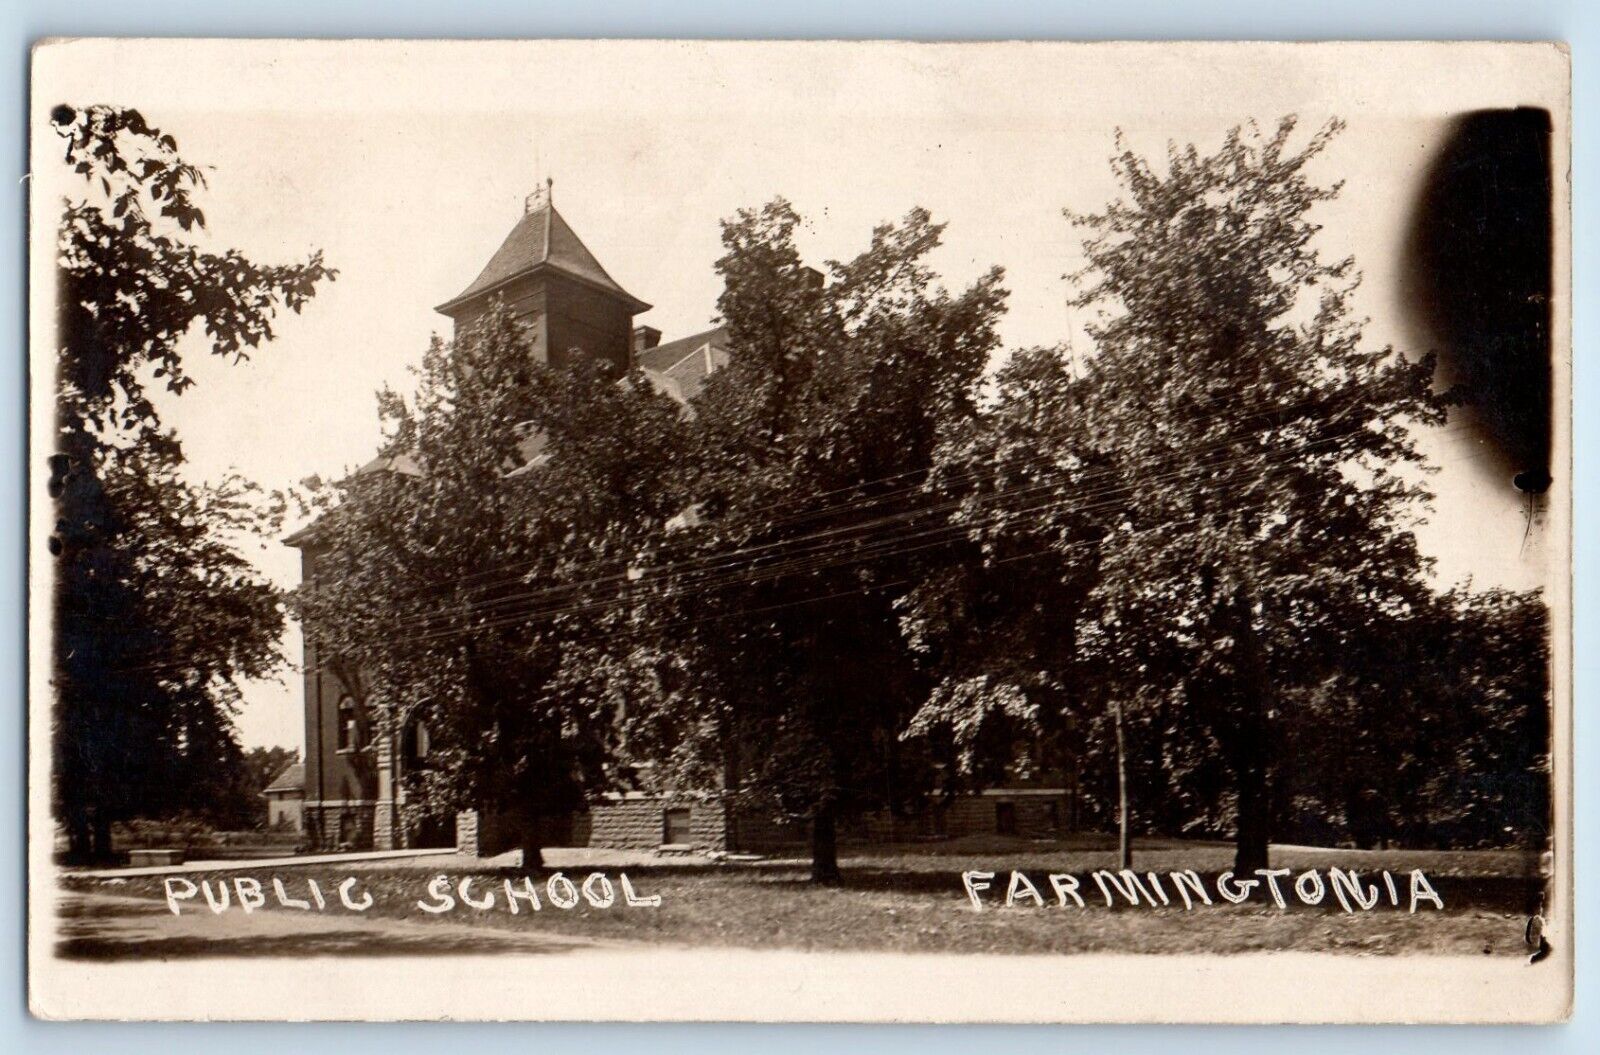 Farmington Iowa IA Postcard RPPC Photo Public School Building c1930's Vintage